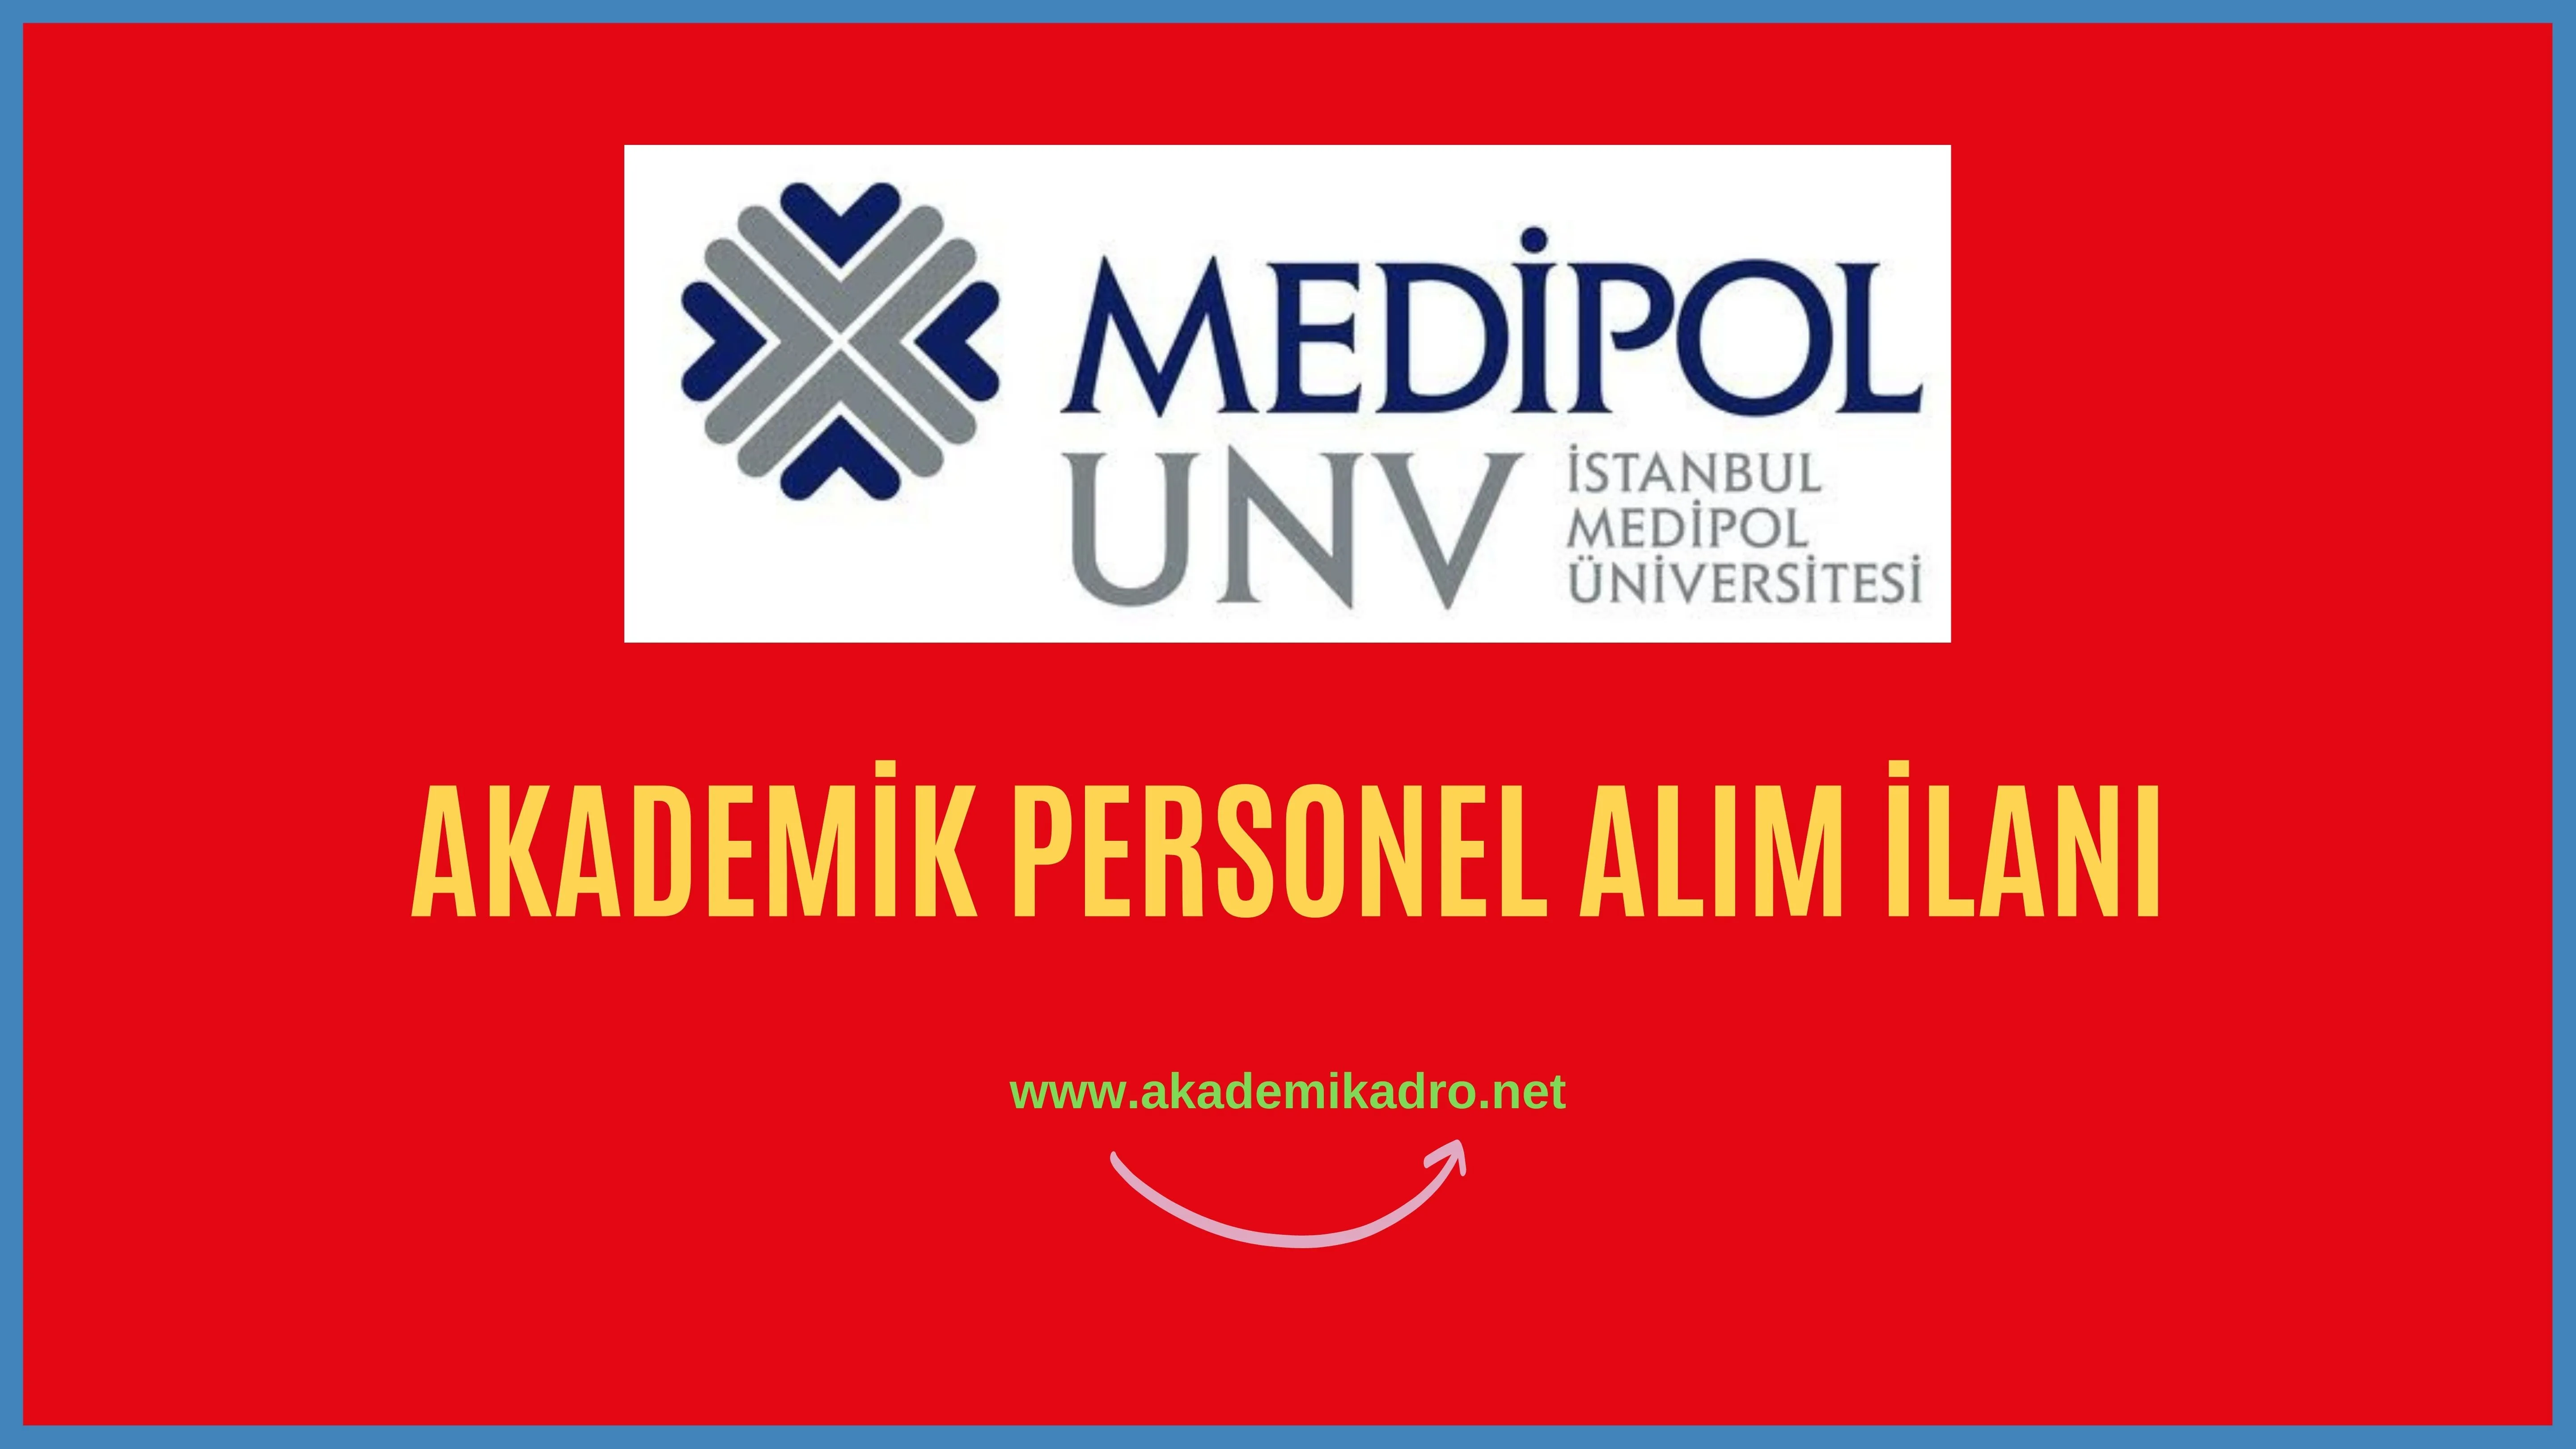 İstanbul Medipol Üniversitesi birçok alandan 53 akademik personel alacak.